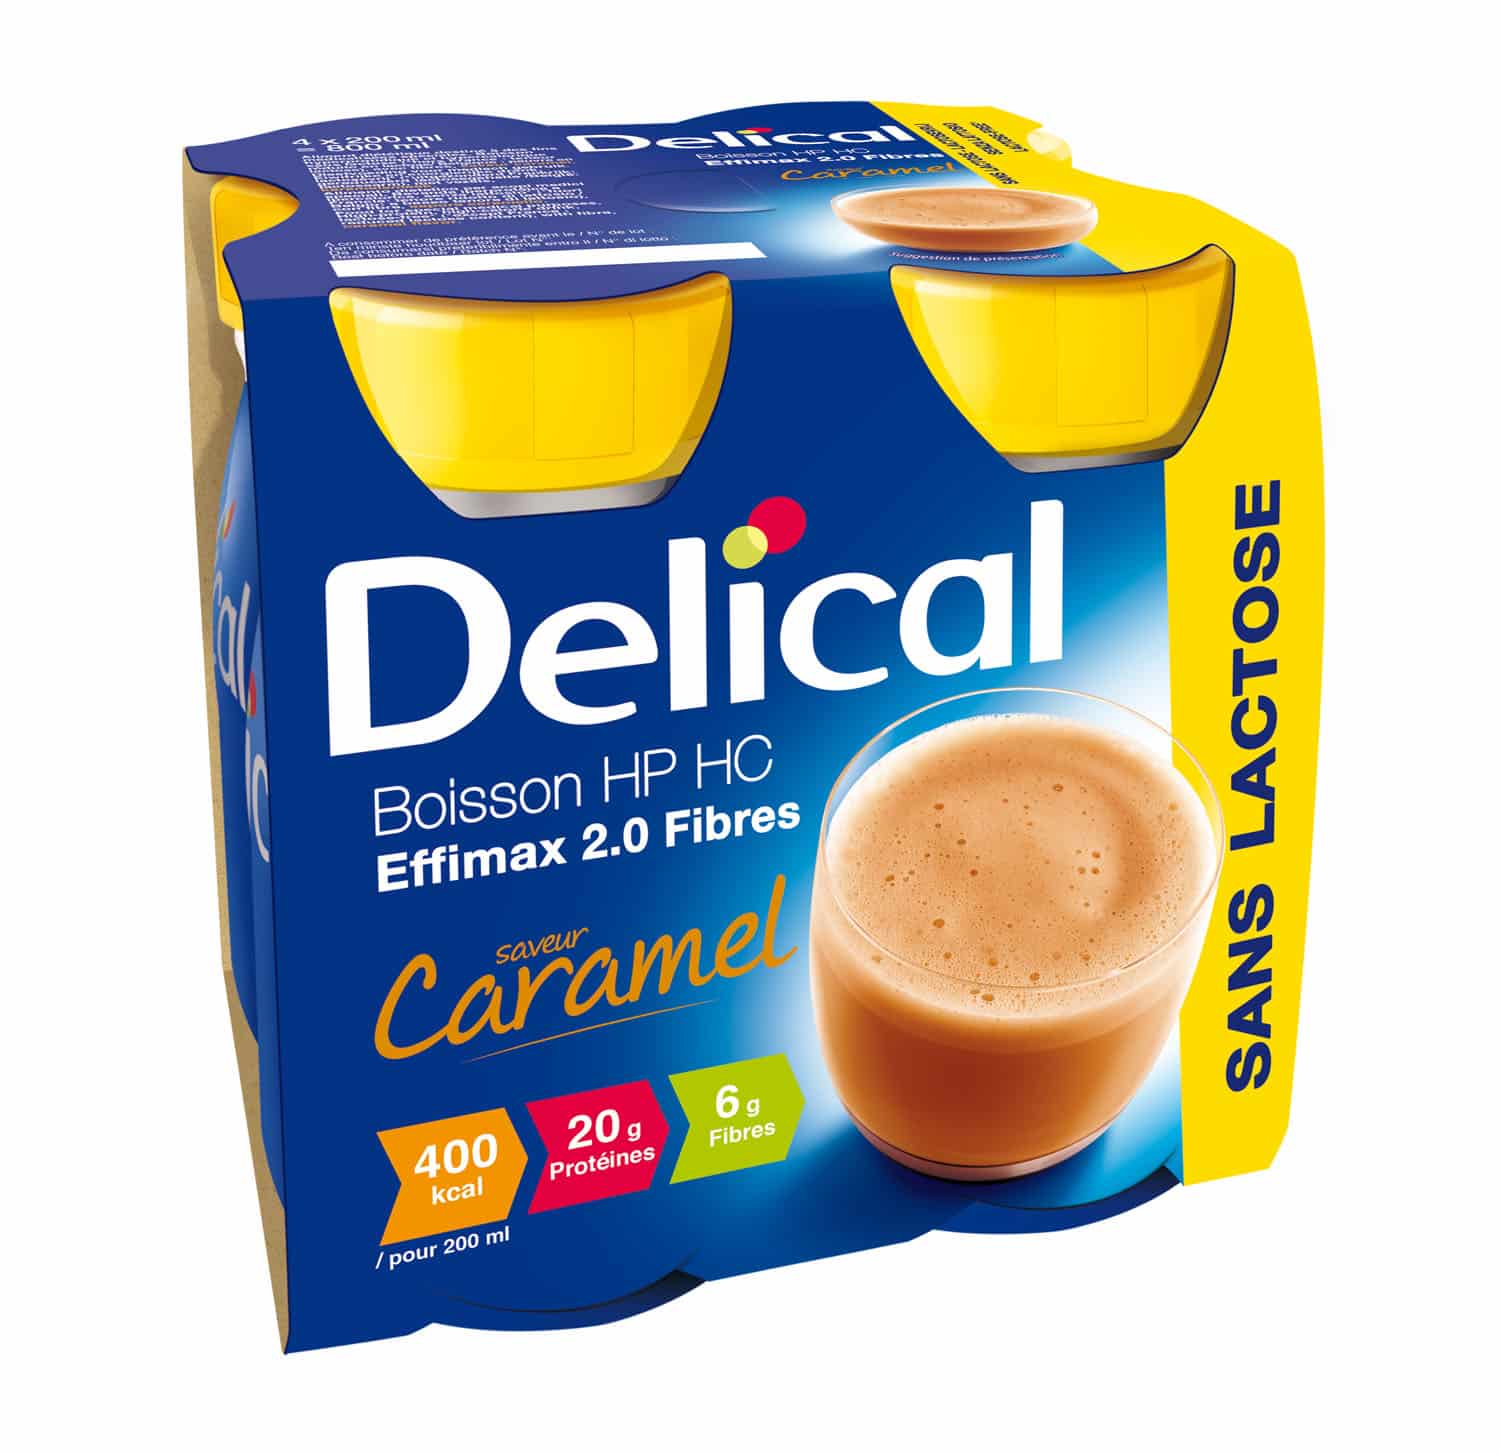 Delical Effimax 2.0 Caramel (Vezels)